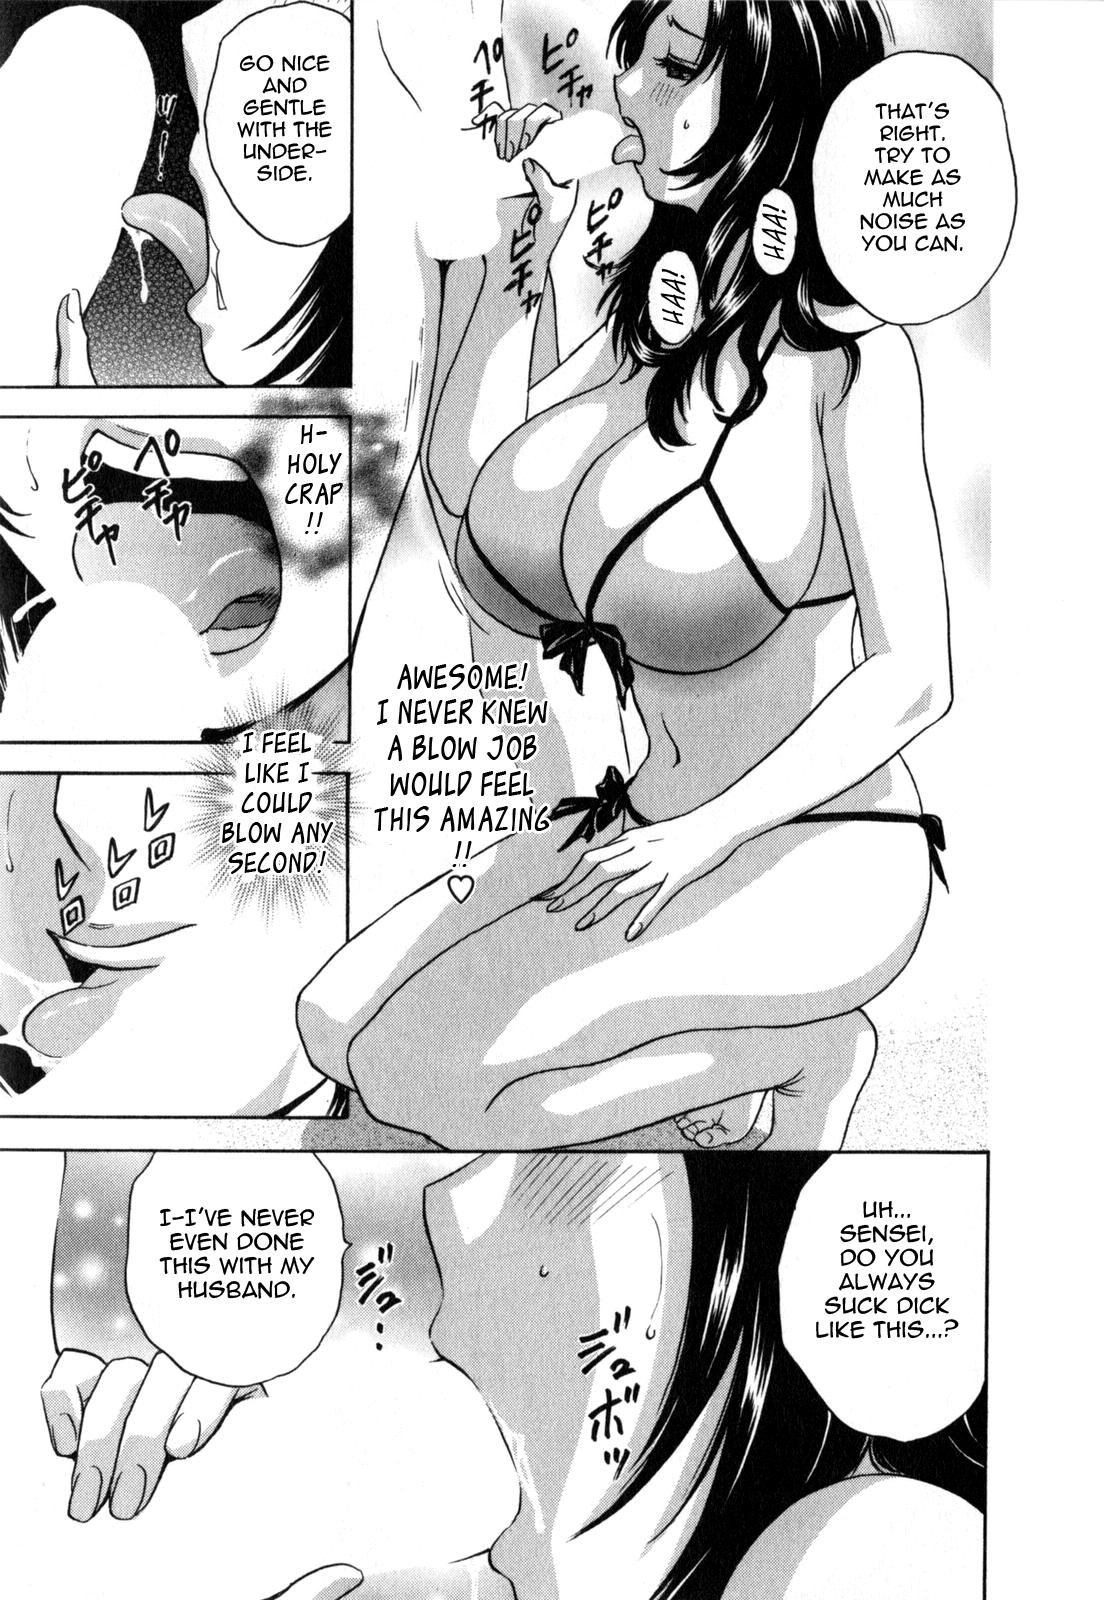 Manga no youna Hitozuma to no Hibi - Days with Married Women such as Comics. 17